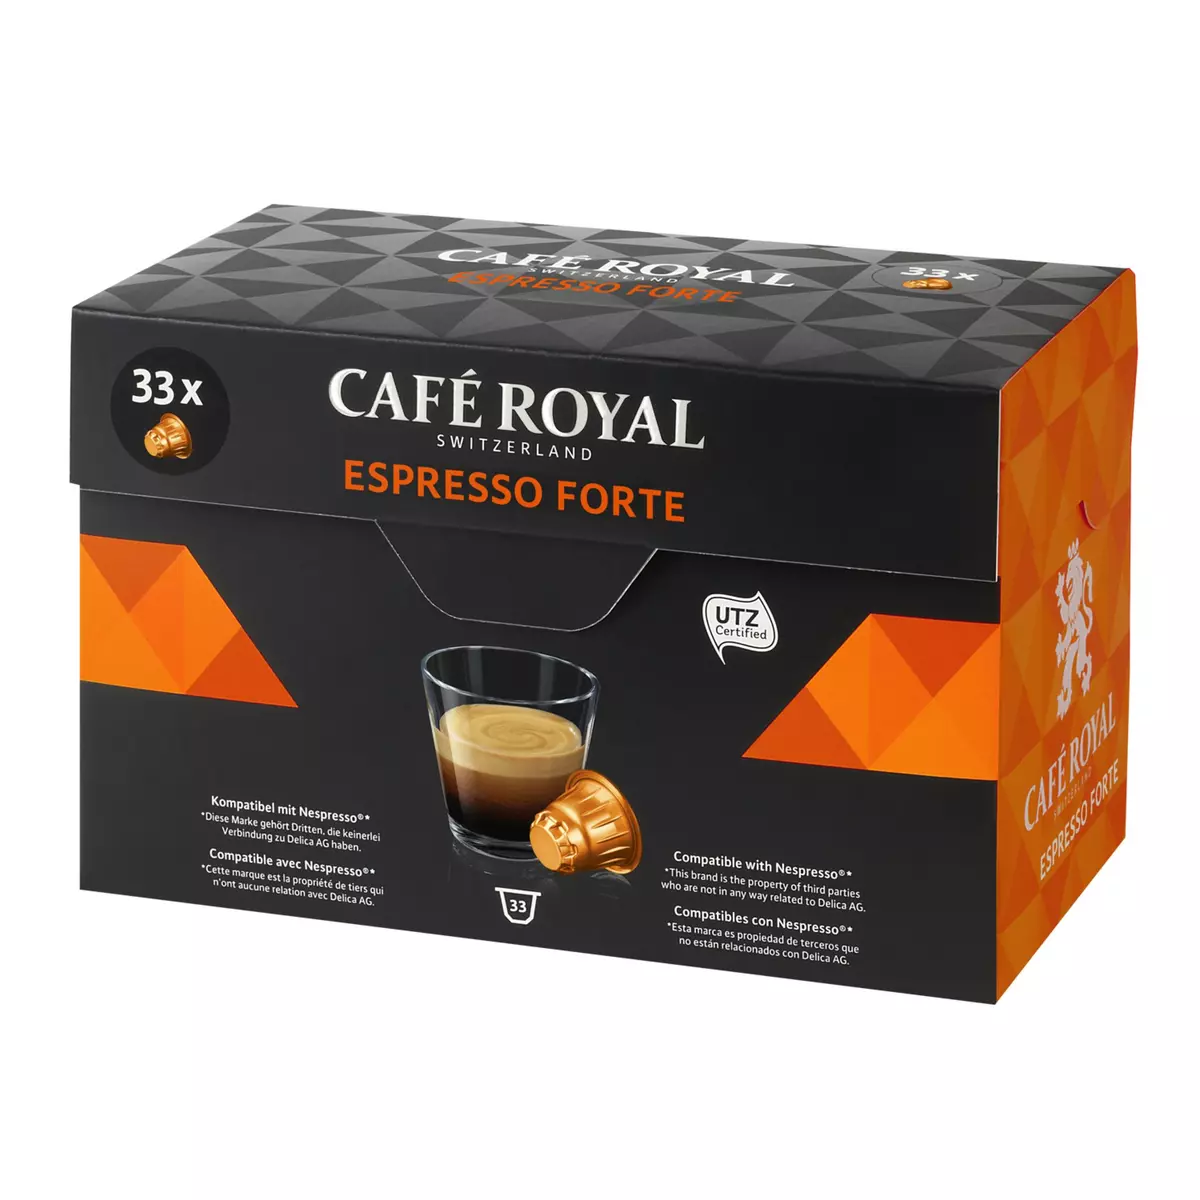 CAFE ROYAL Café Royal espresso forte capsule x33 -170g